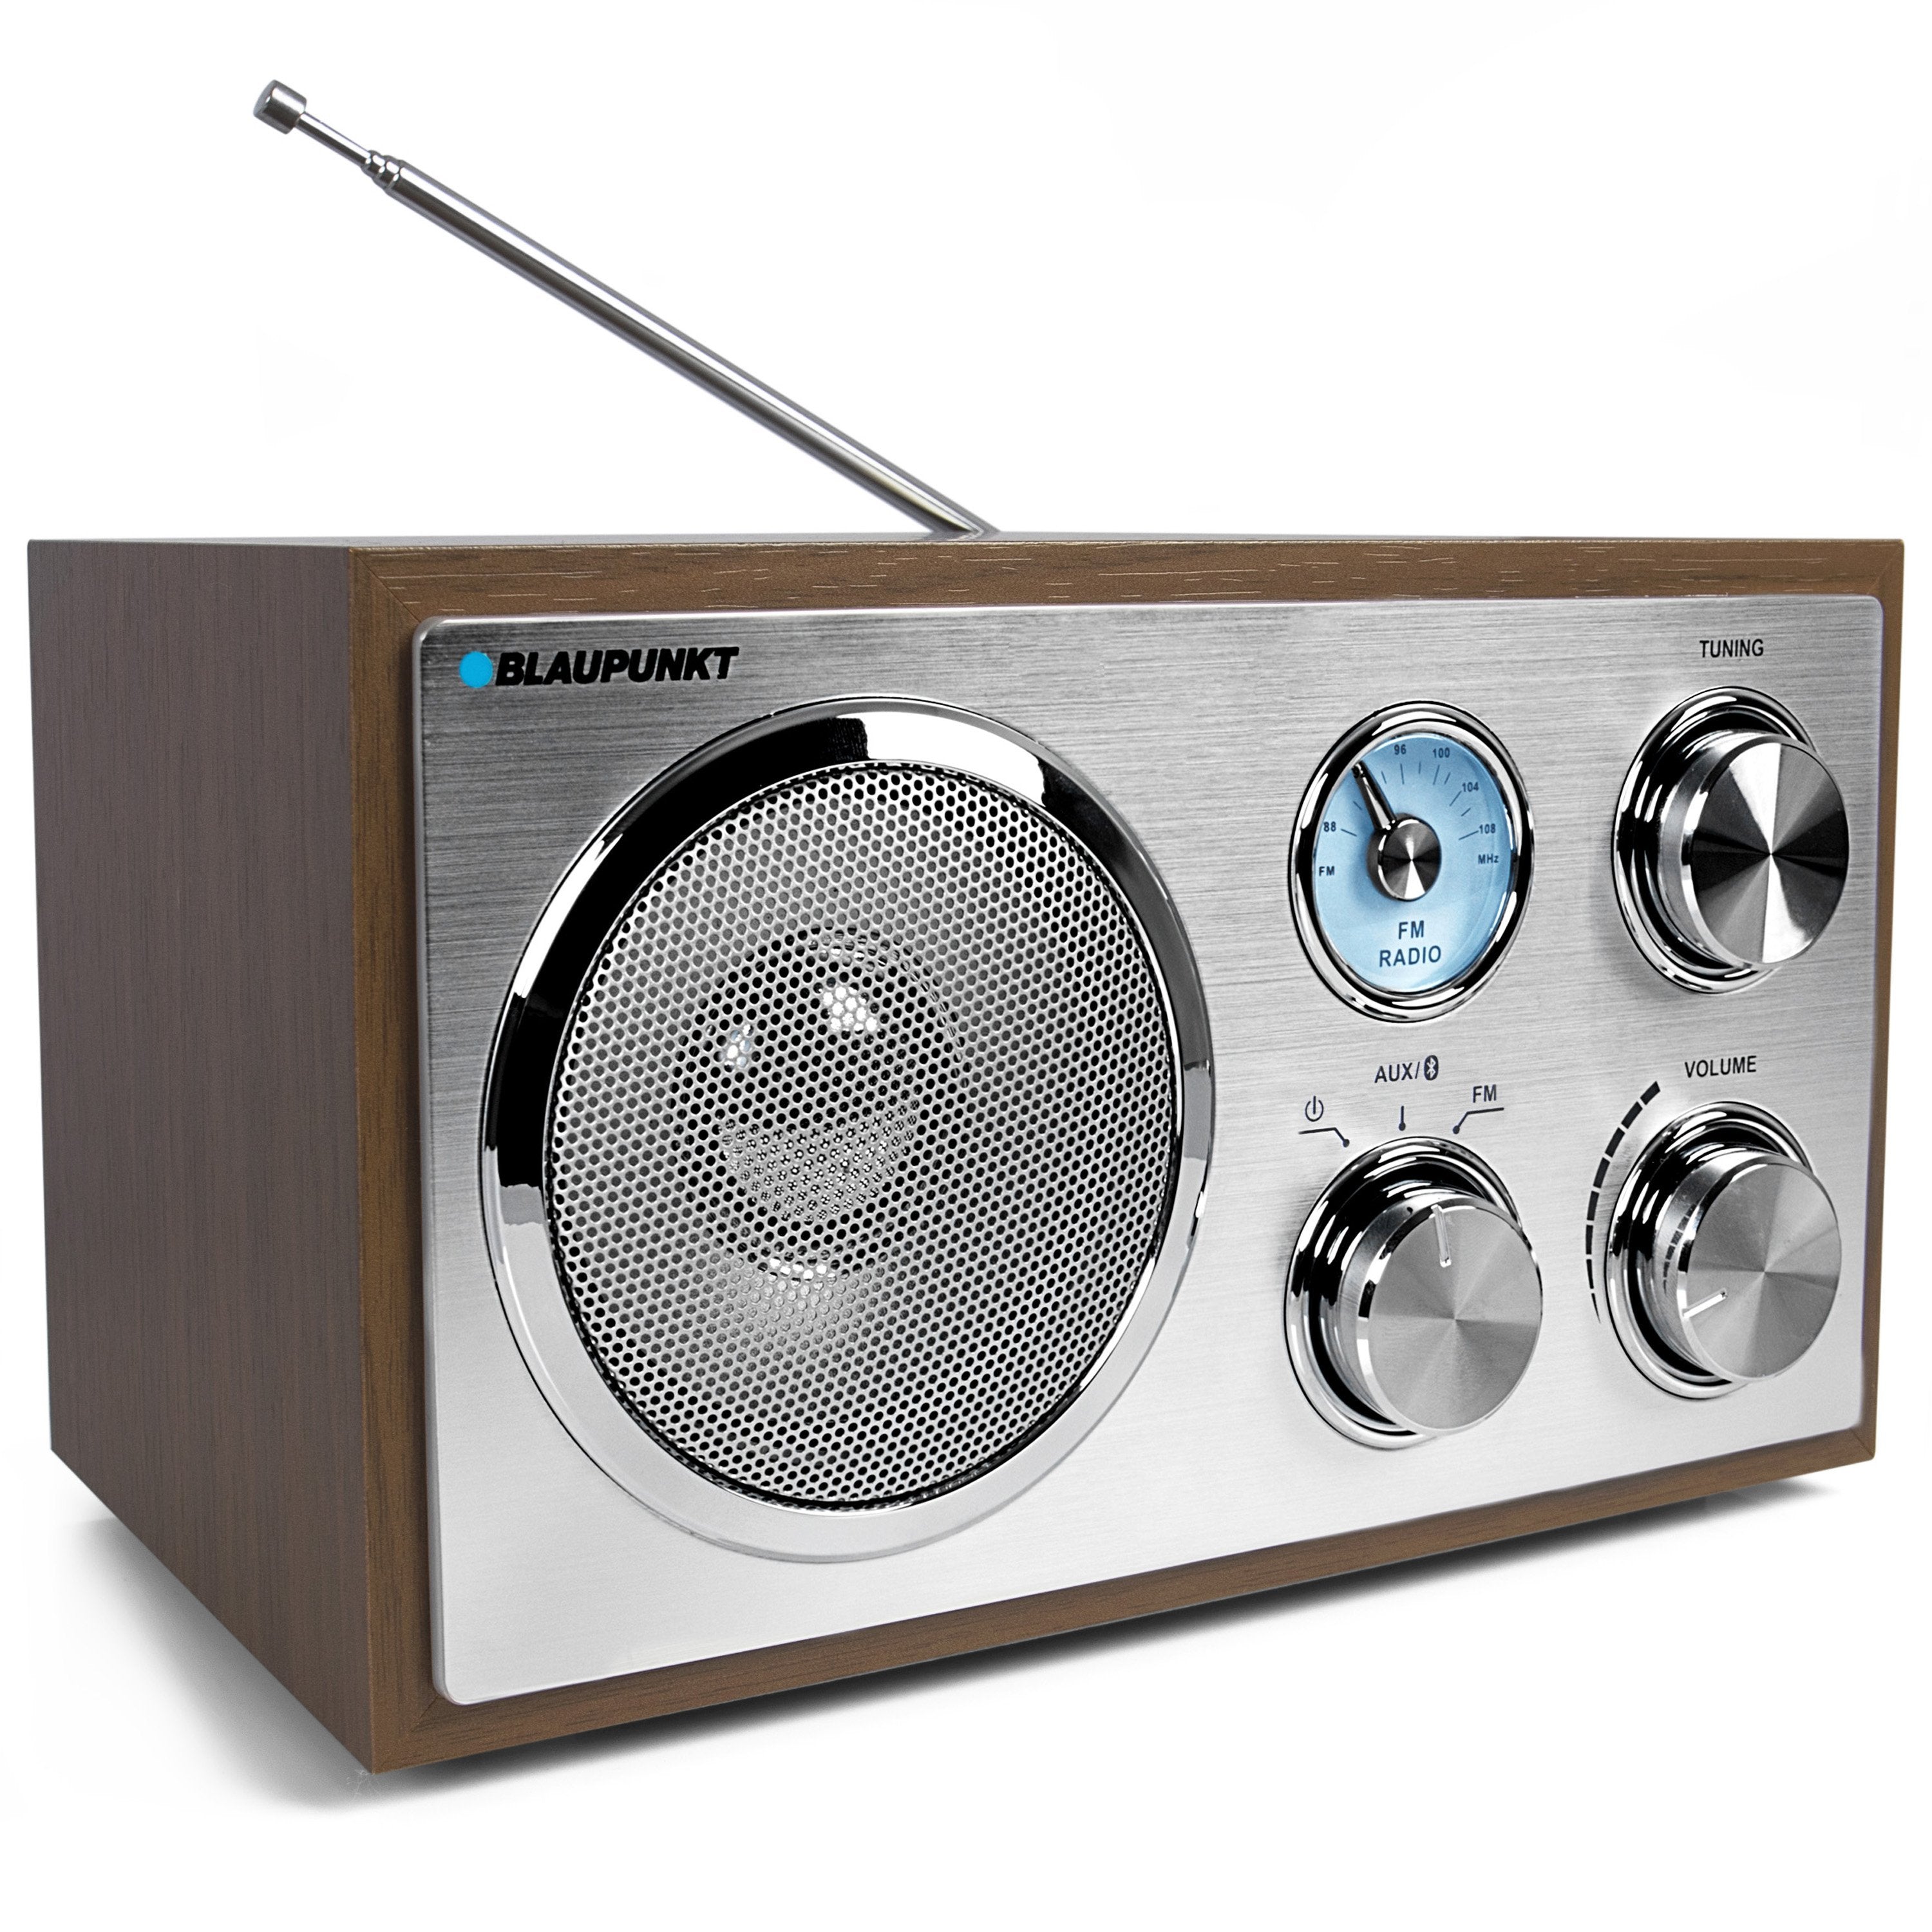 Nostalgie Radio mit Bluetooth  RXN 180 – Globaltronics Online Shop